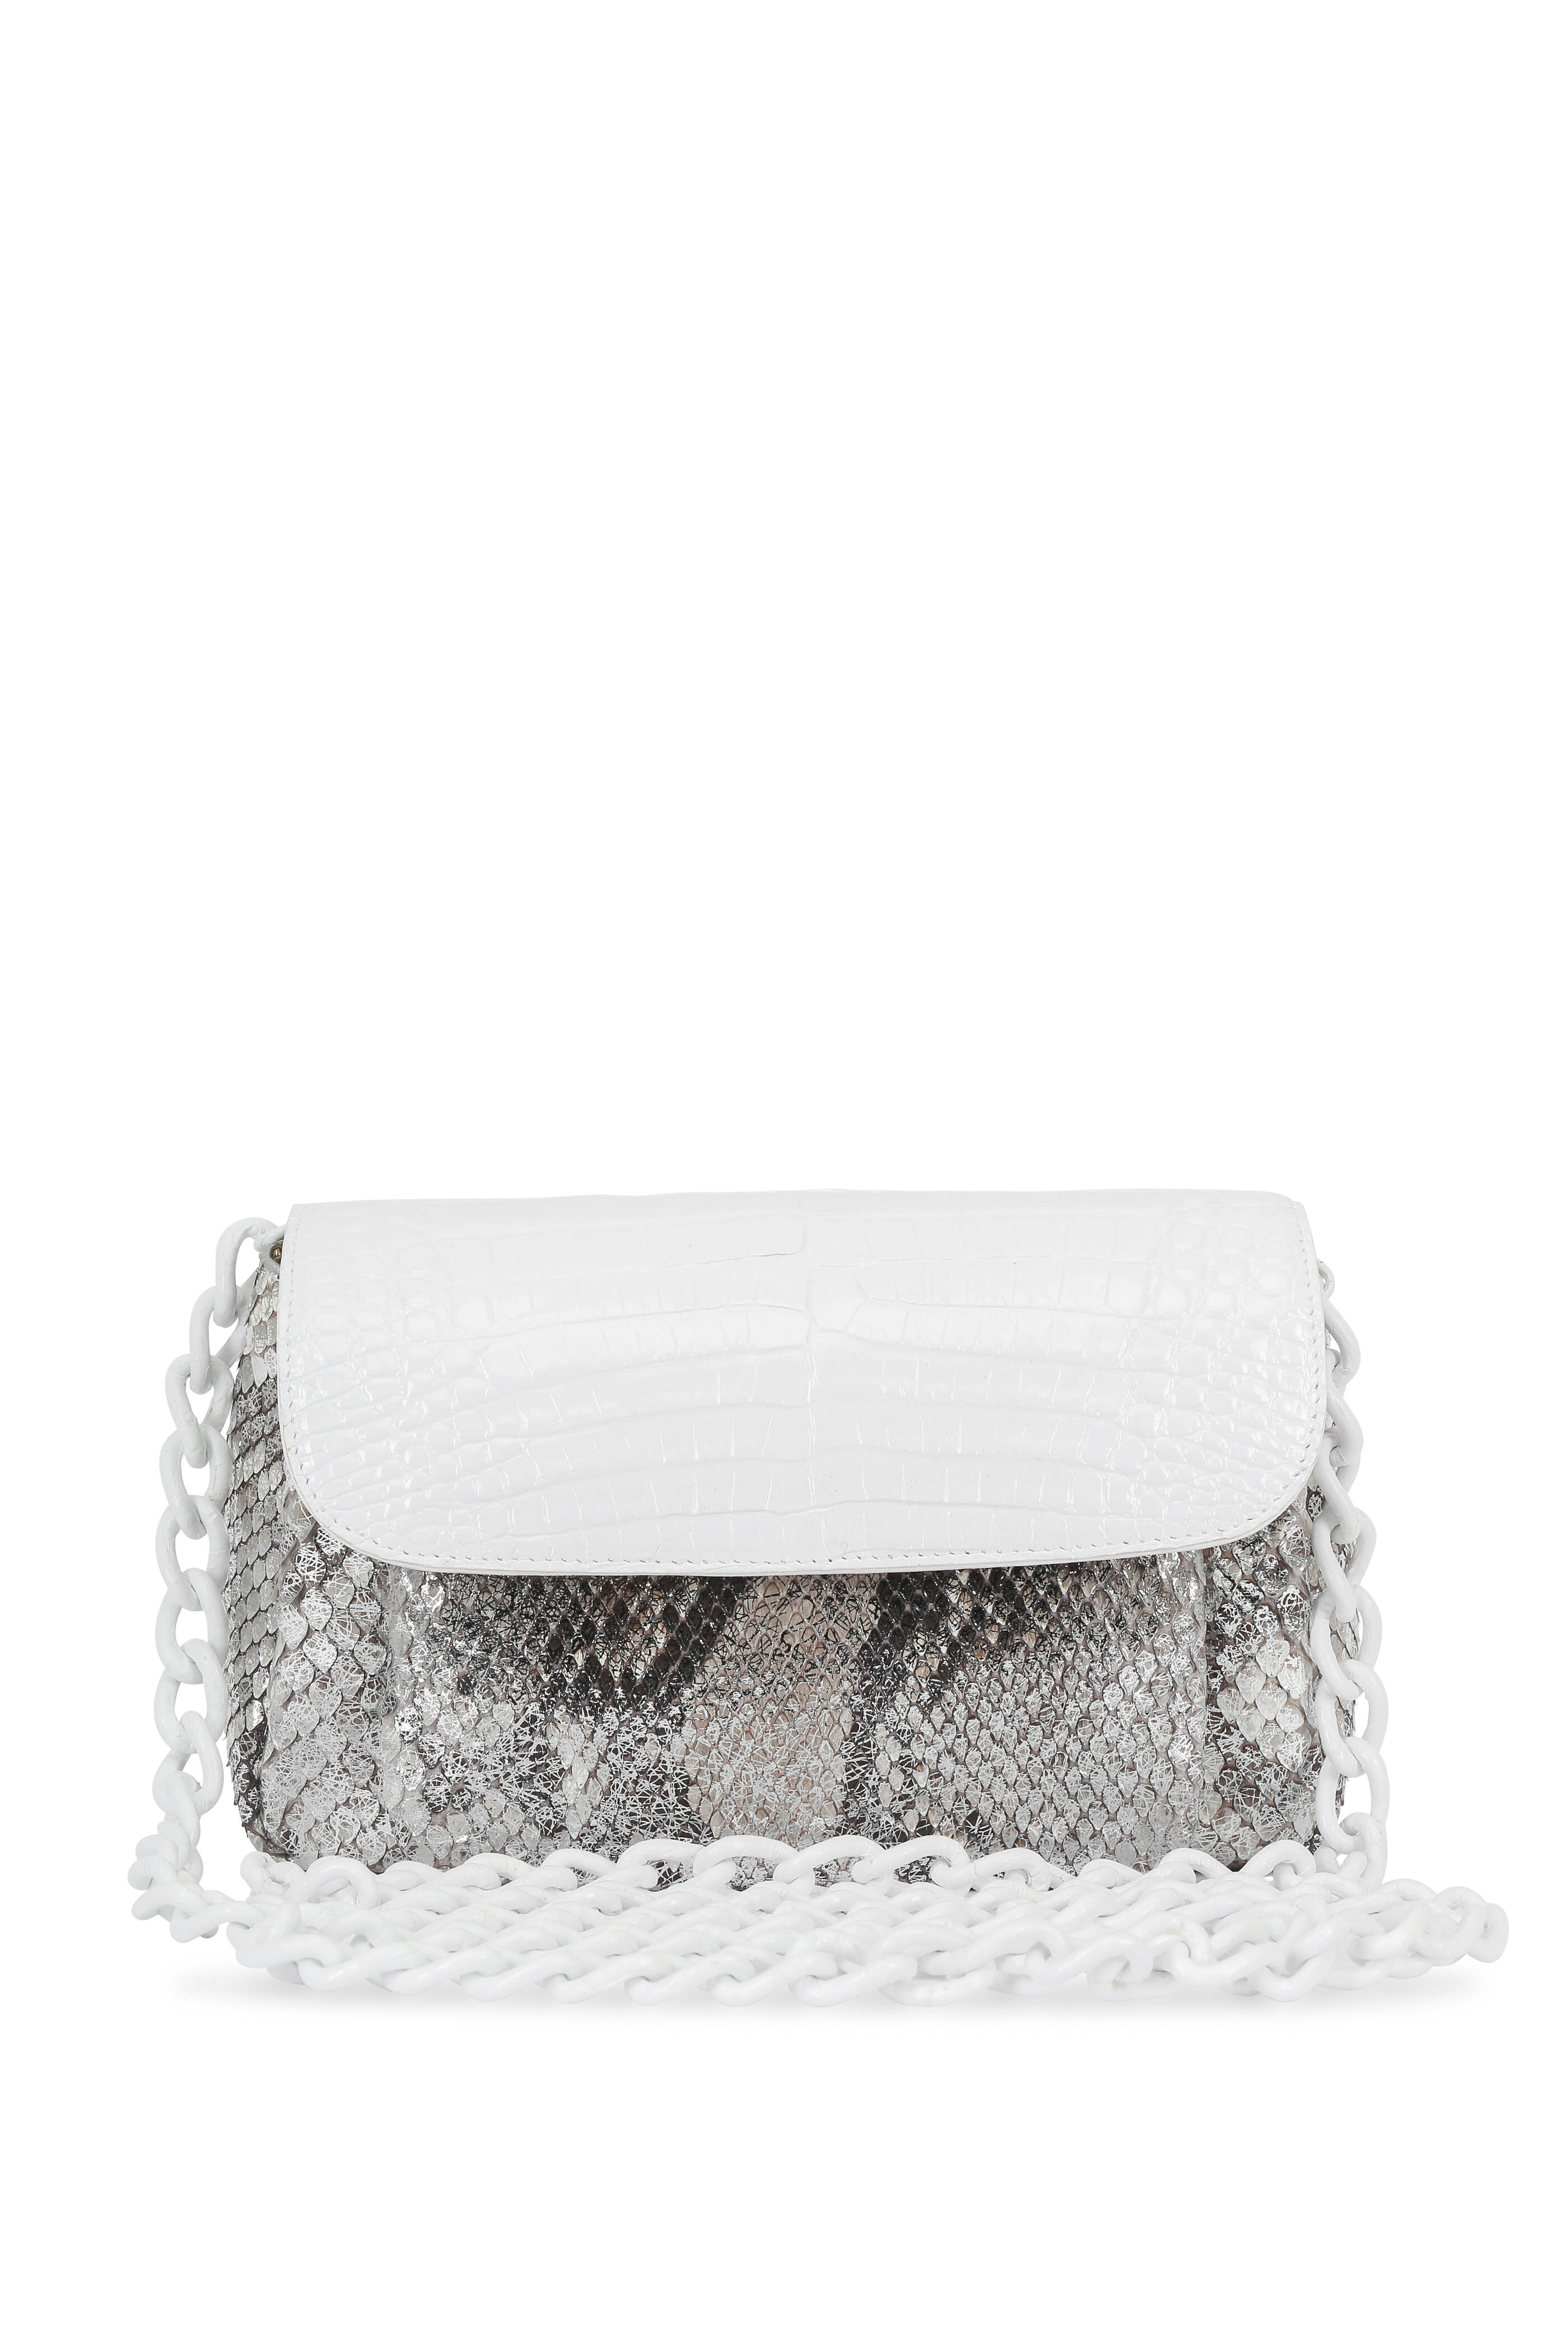 Nancy Gonzalez - White Crocodile & Metallic Silver Python Mini Bag